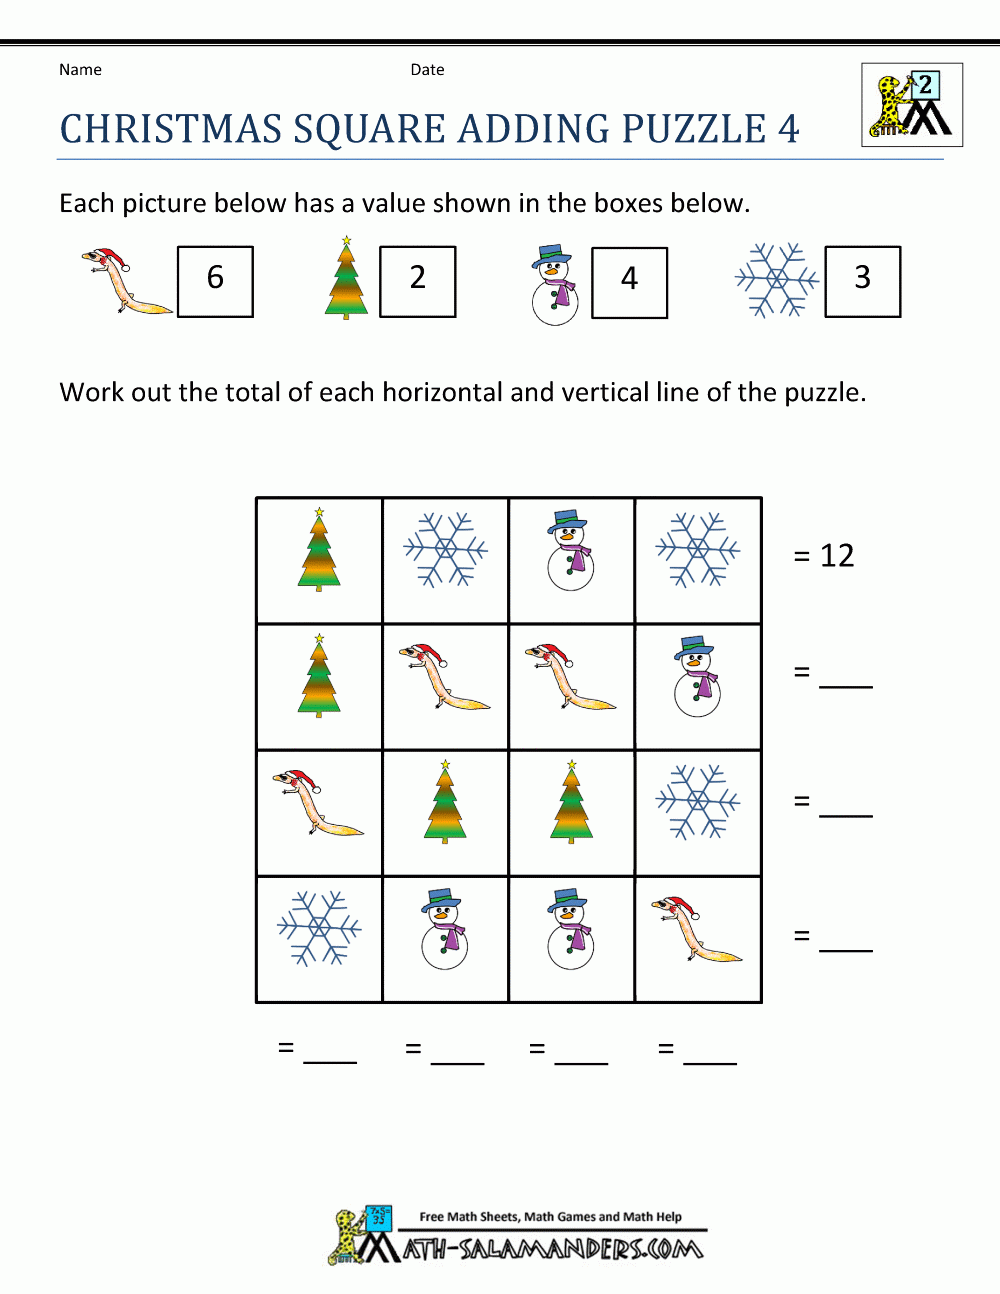 Christmas Math Worksheets | Christmas Math Worksheets, Math